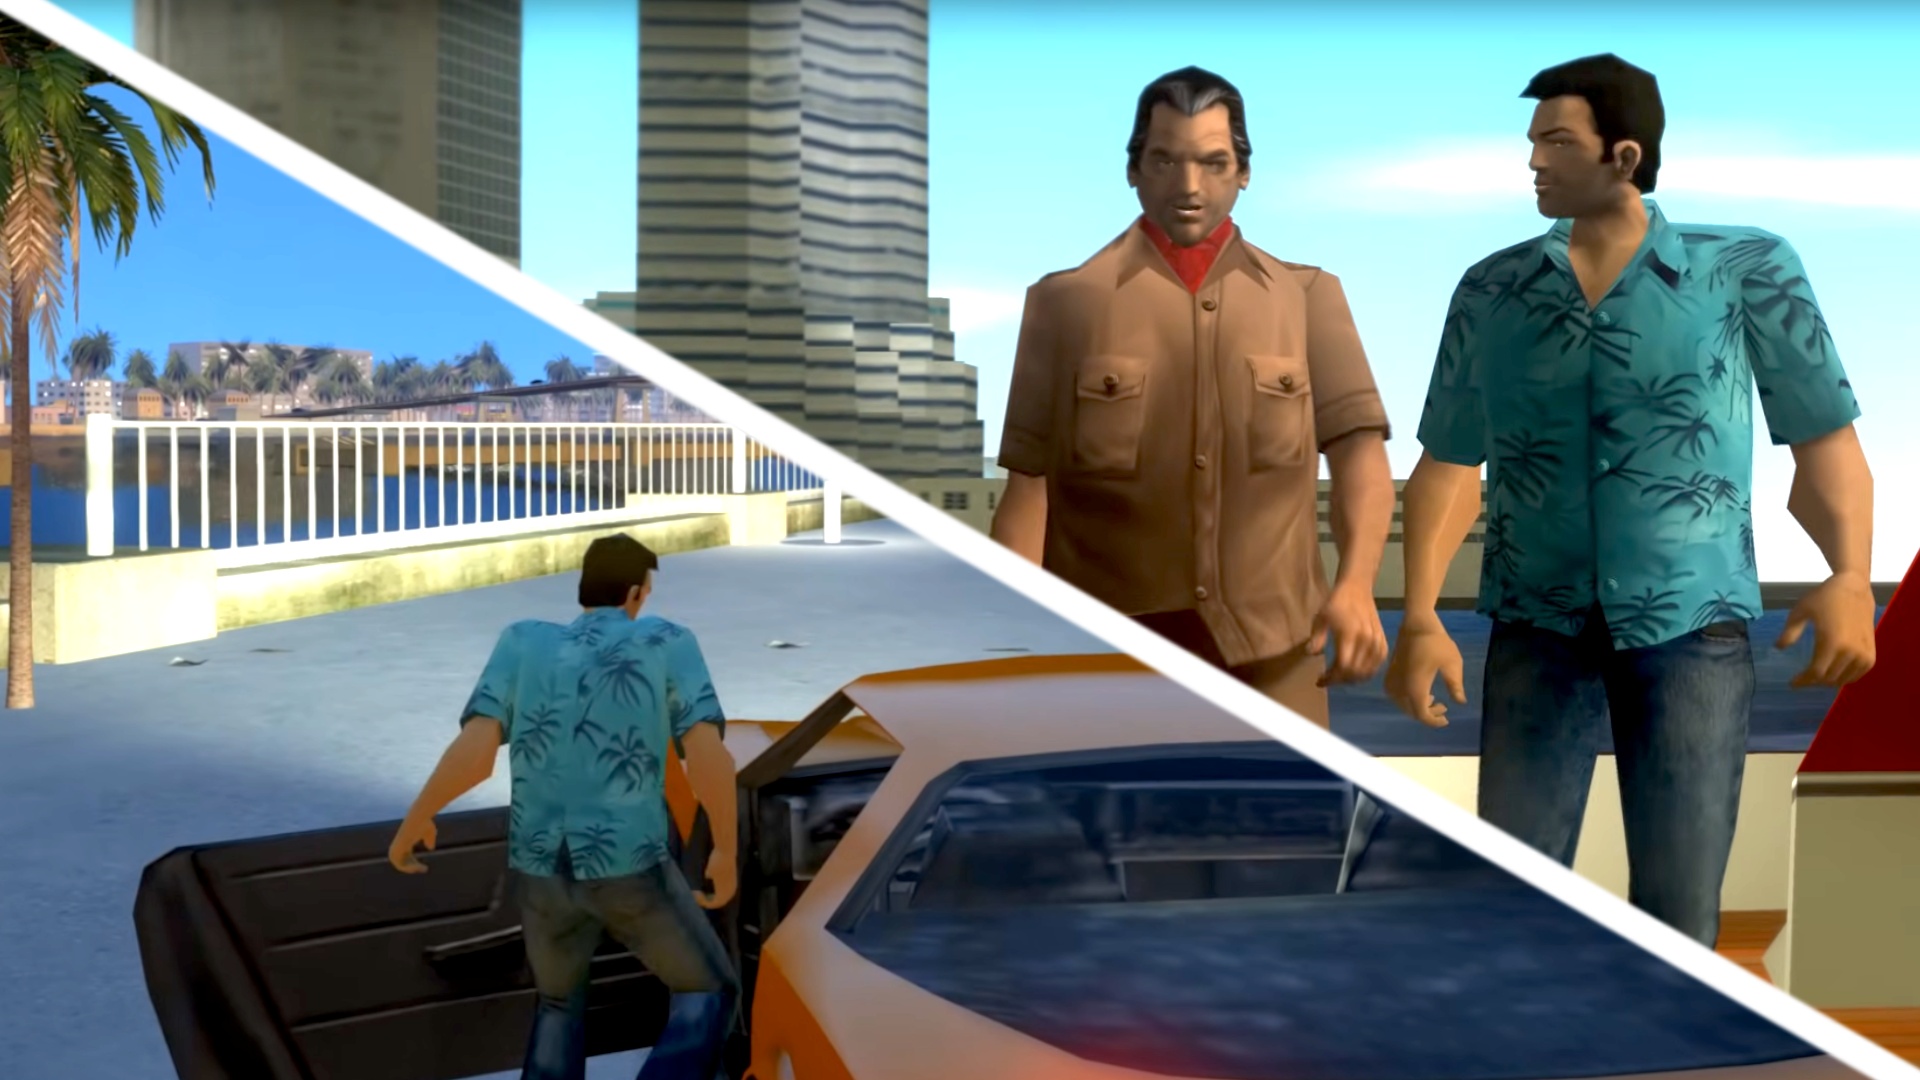 #»Das sieht fantastisch aus« – Gameplay aus NextGen-Projekt für GTA Vice City sorgt für Staunen